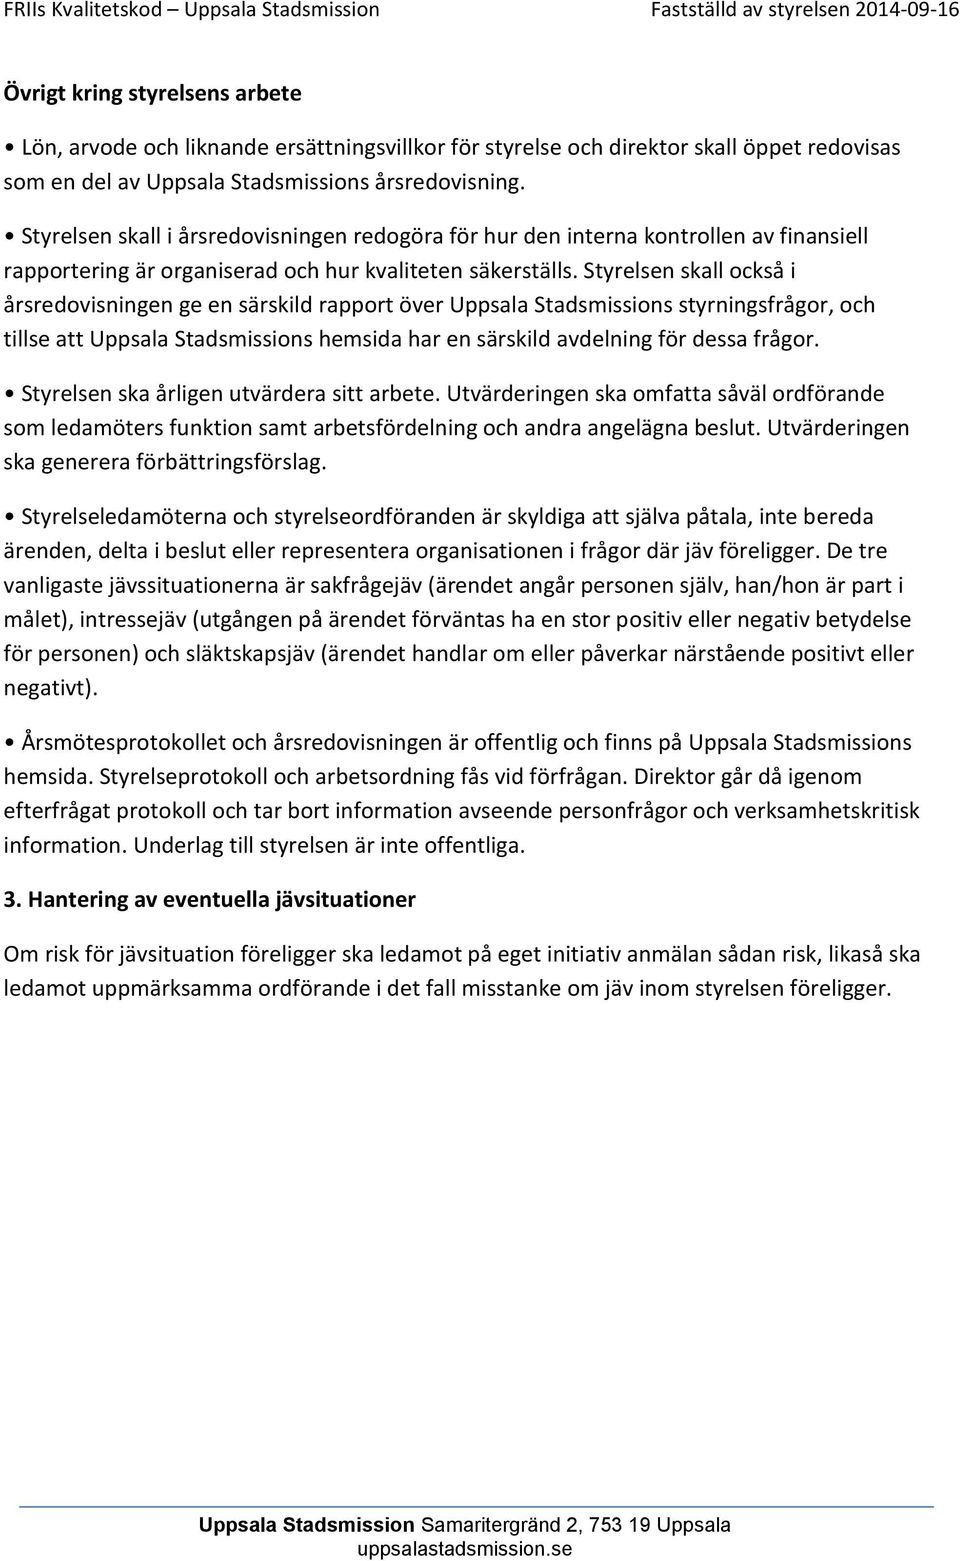 Styrelsen skall också i årsredovisningen ge en särskild rapport över Uppsala Stadsmissions styrningsfrågor, och tillse att Uppsala Stadsmissions hemsida har en särskild avdelning för dessa frågor.